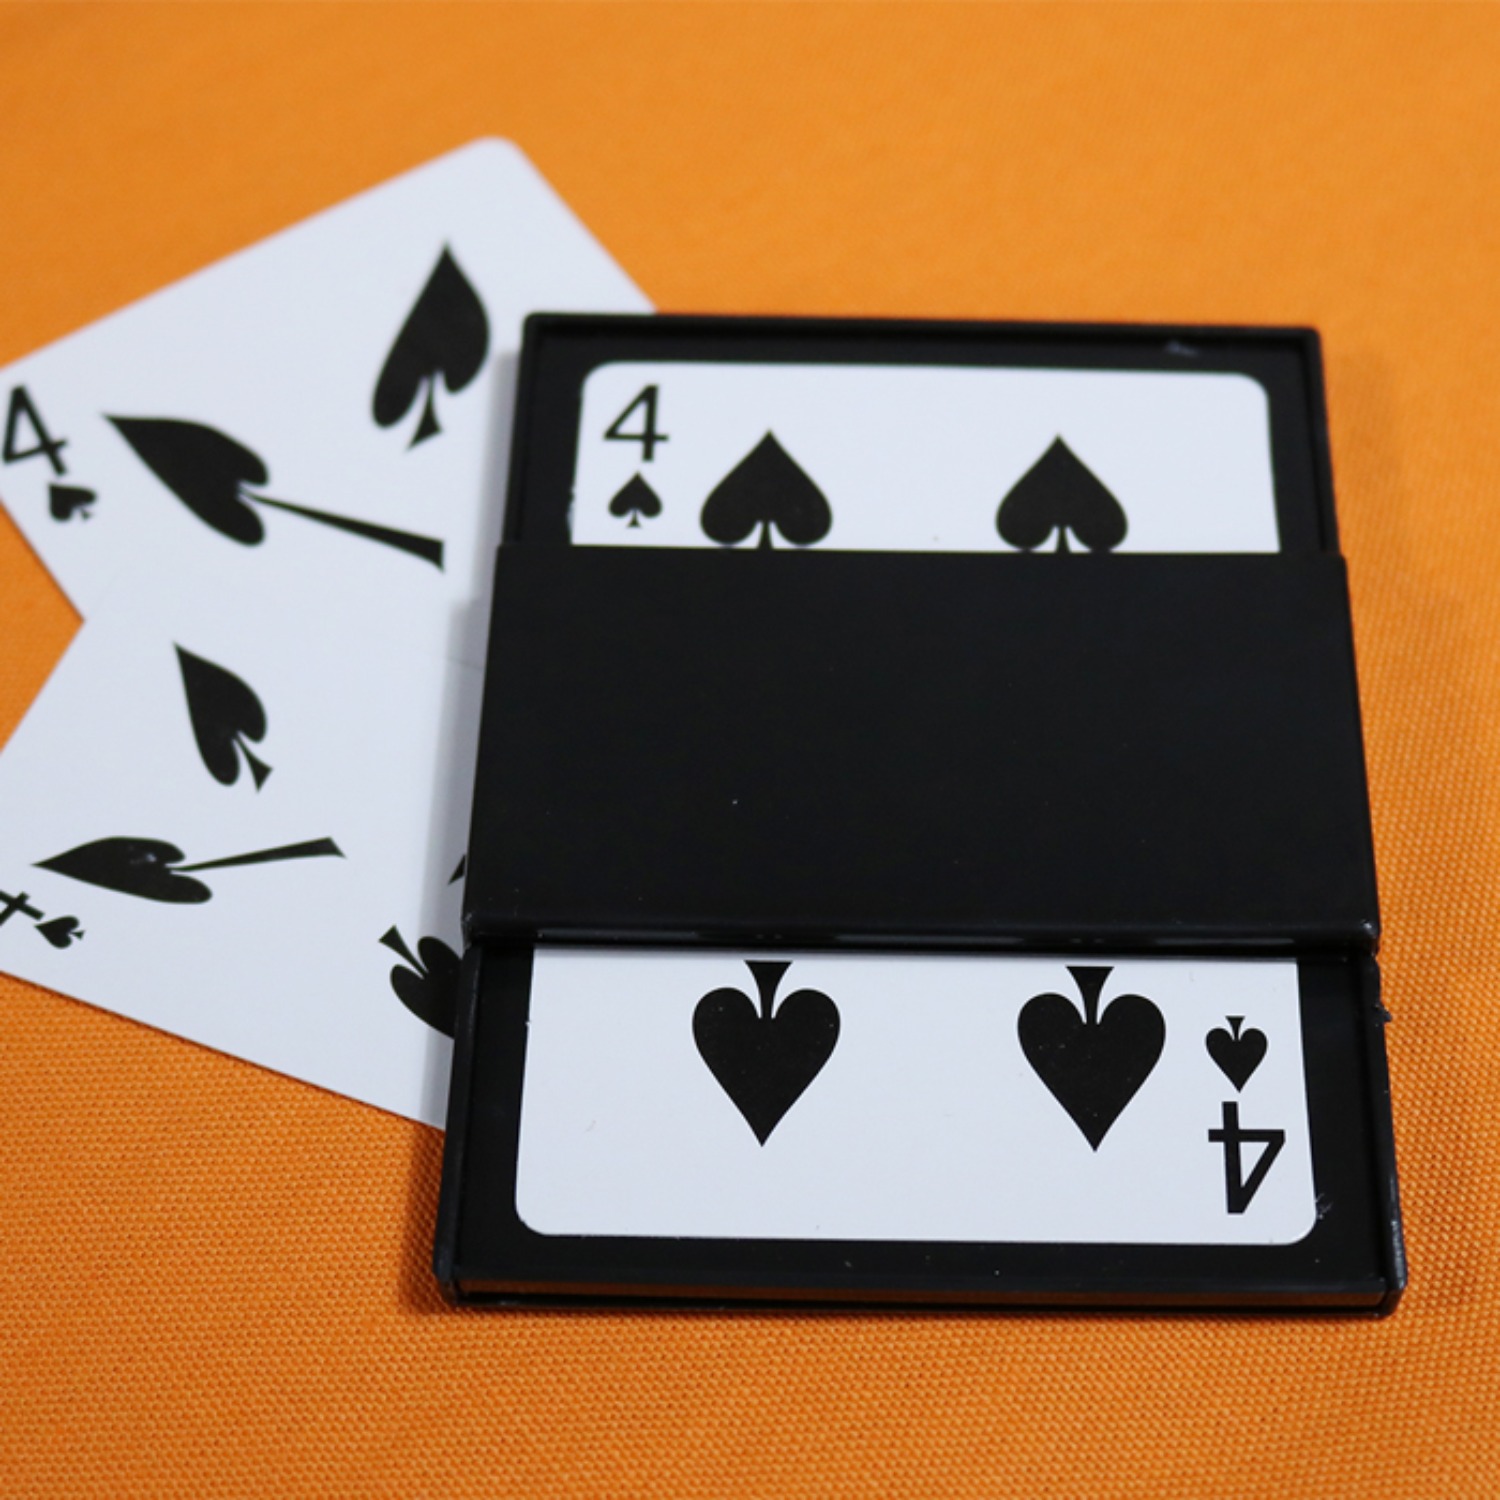 [카드체인저 Card changer] 카드가 순식간에 바뀌는 두개의 카드마술을 연출하실 수 있습니다.(partyn)